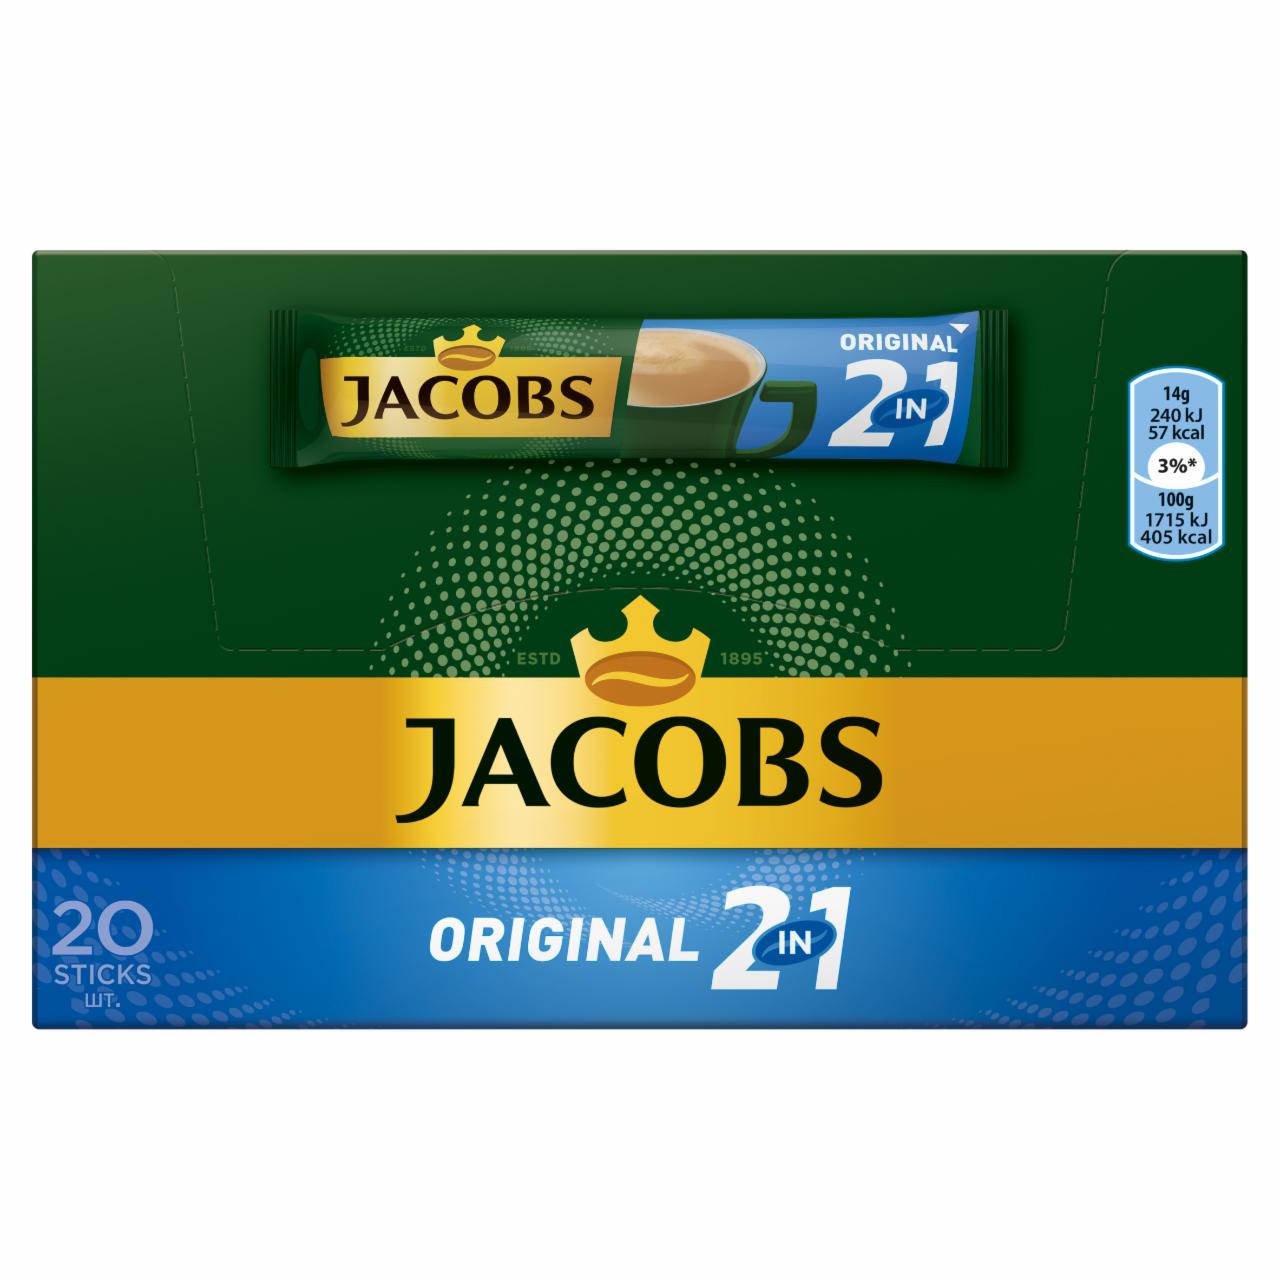 Képek - Jacobs Original 2in1